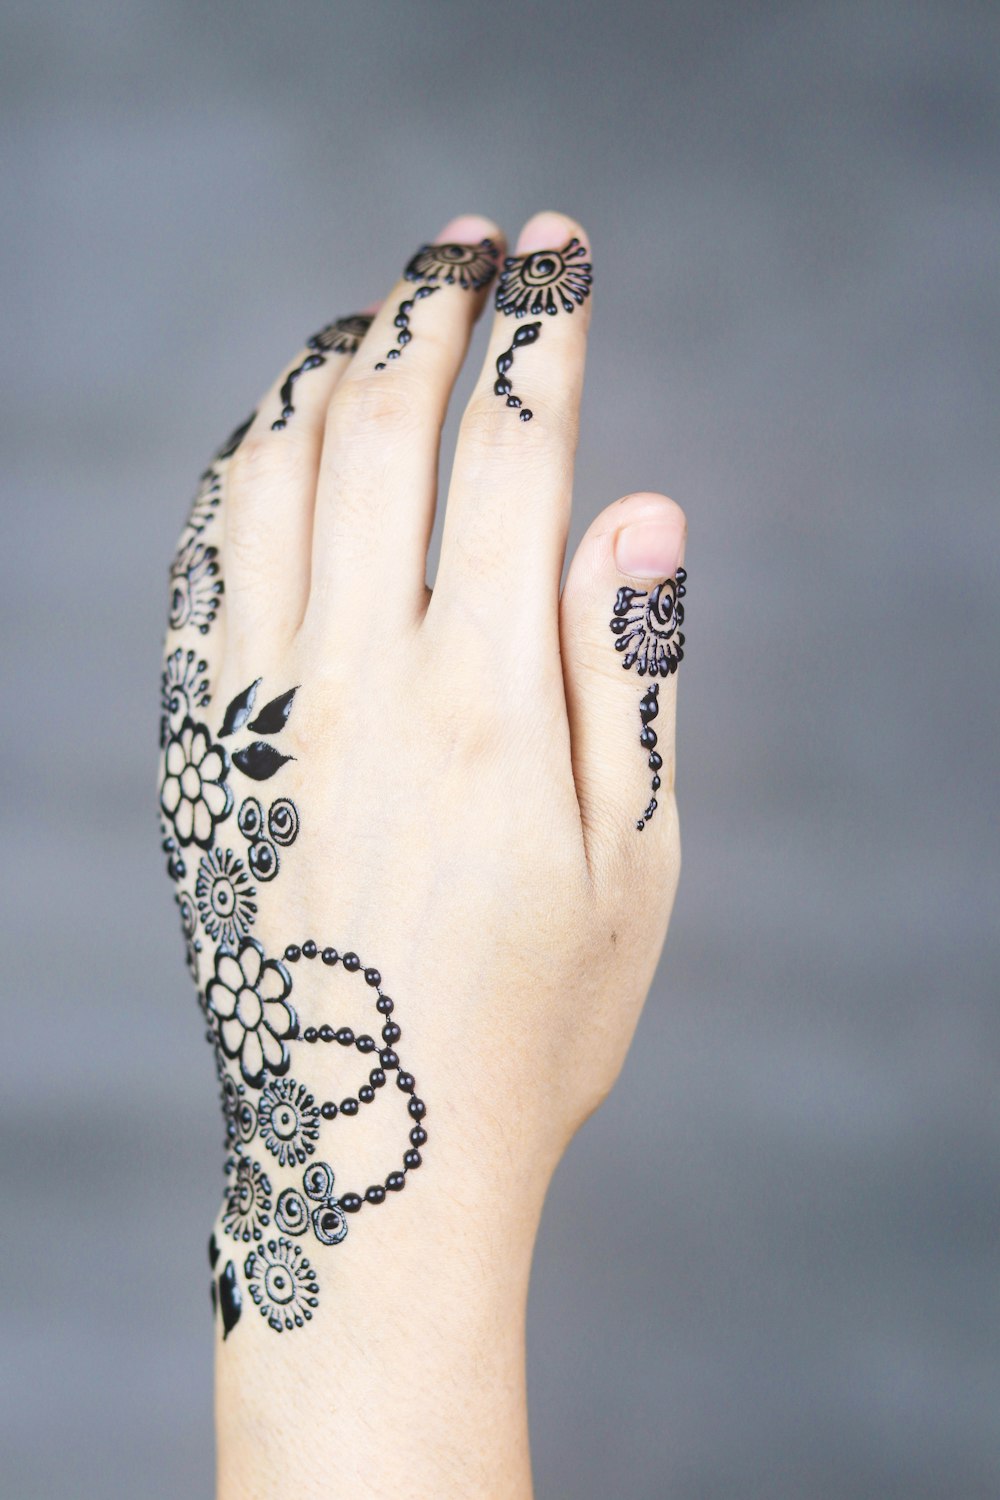 mendhi tattoo on leaf hand photo – Free Skin Image on Unsplash